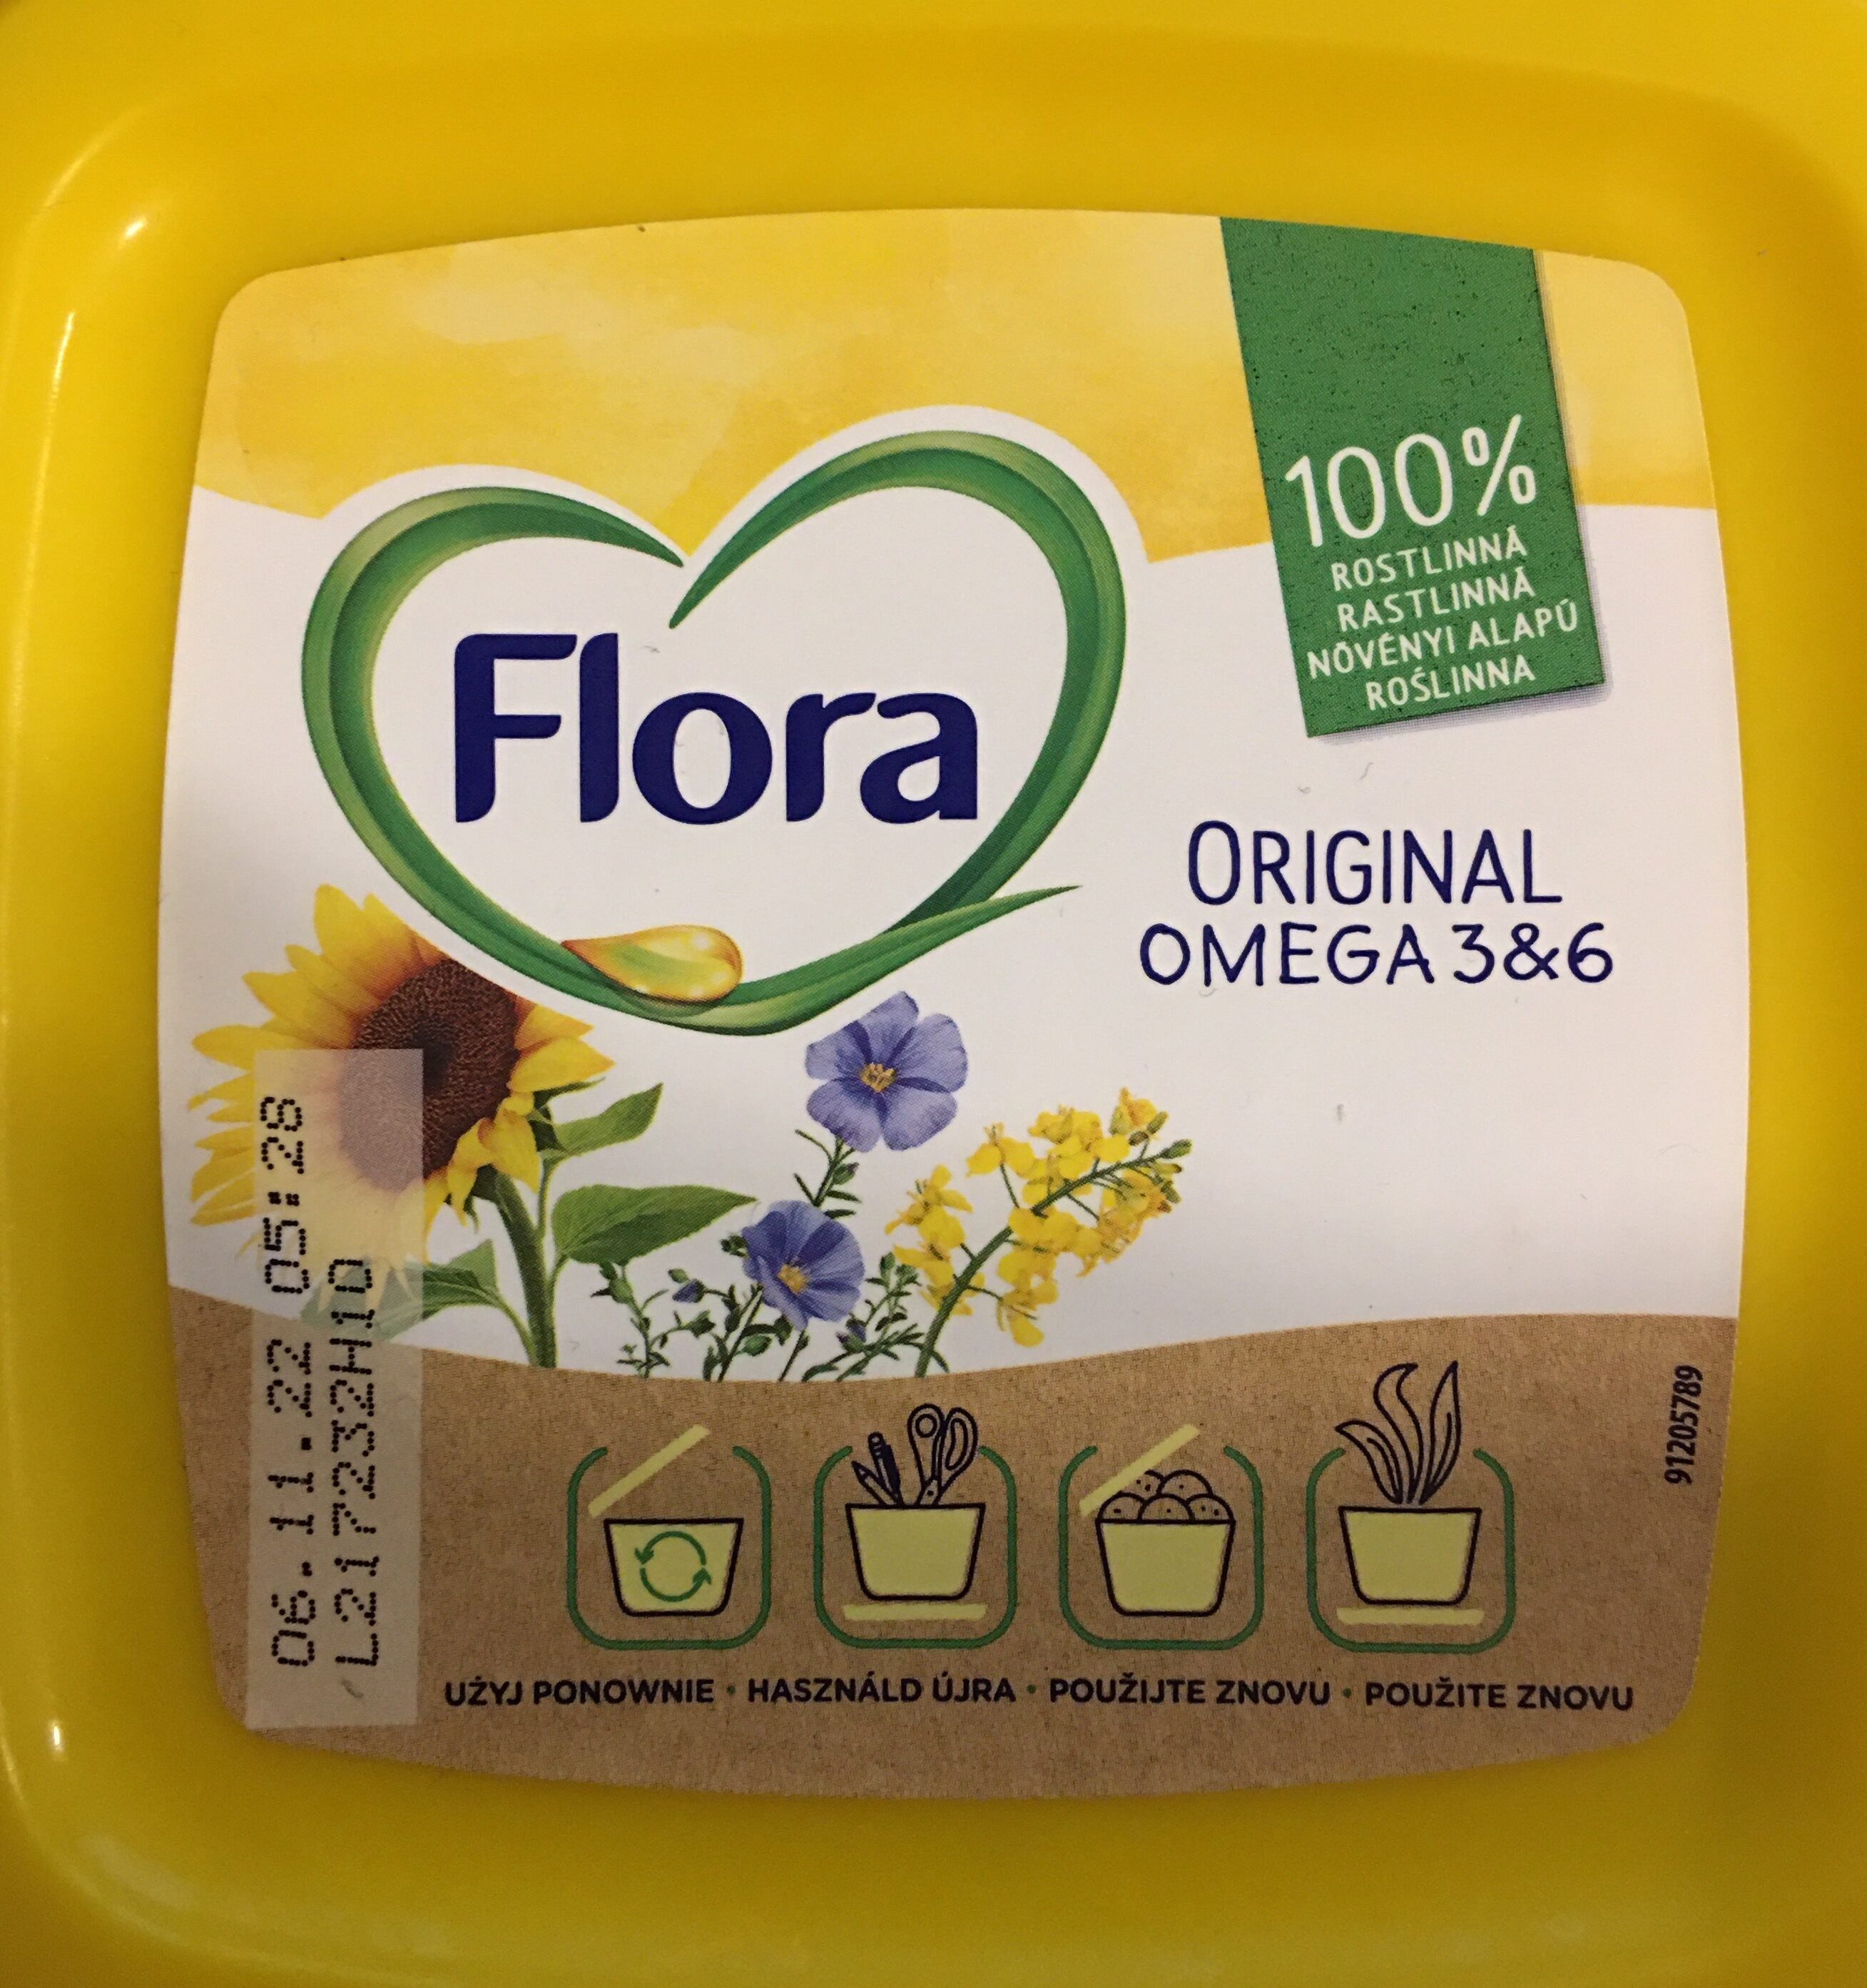 Original Omega 3&6 - Produkt